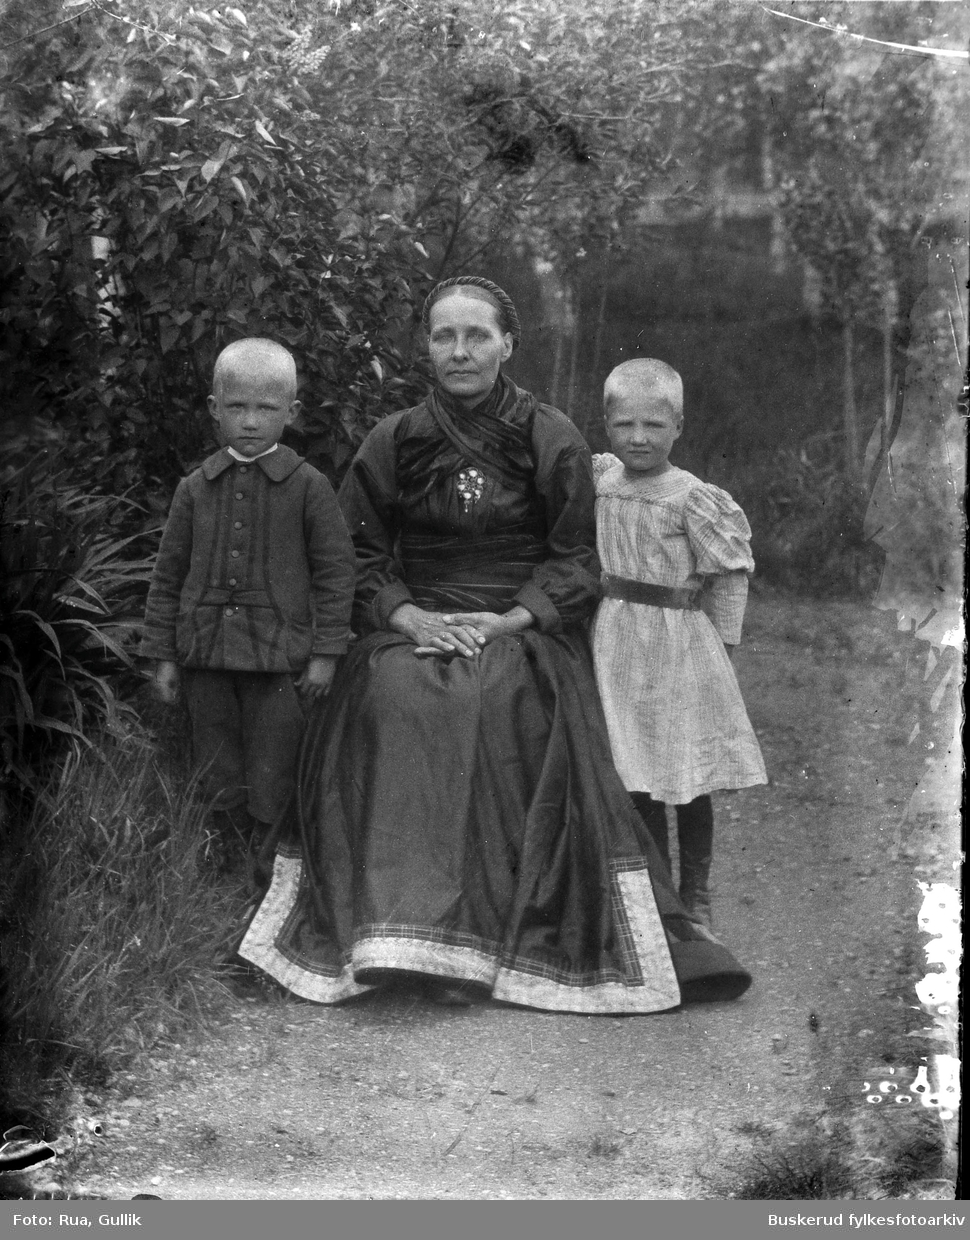 Aslaug O. Løvheim med sine to barn
Sauland